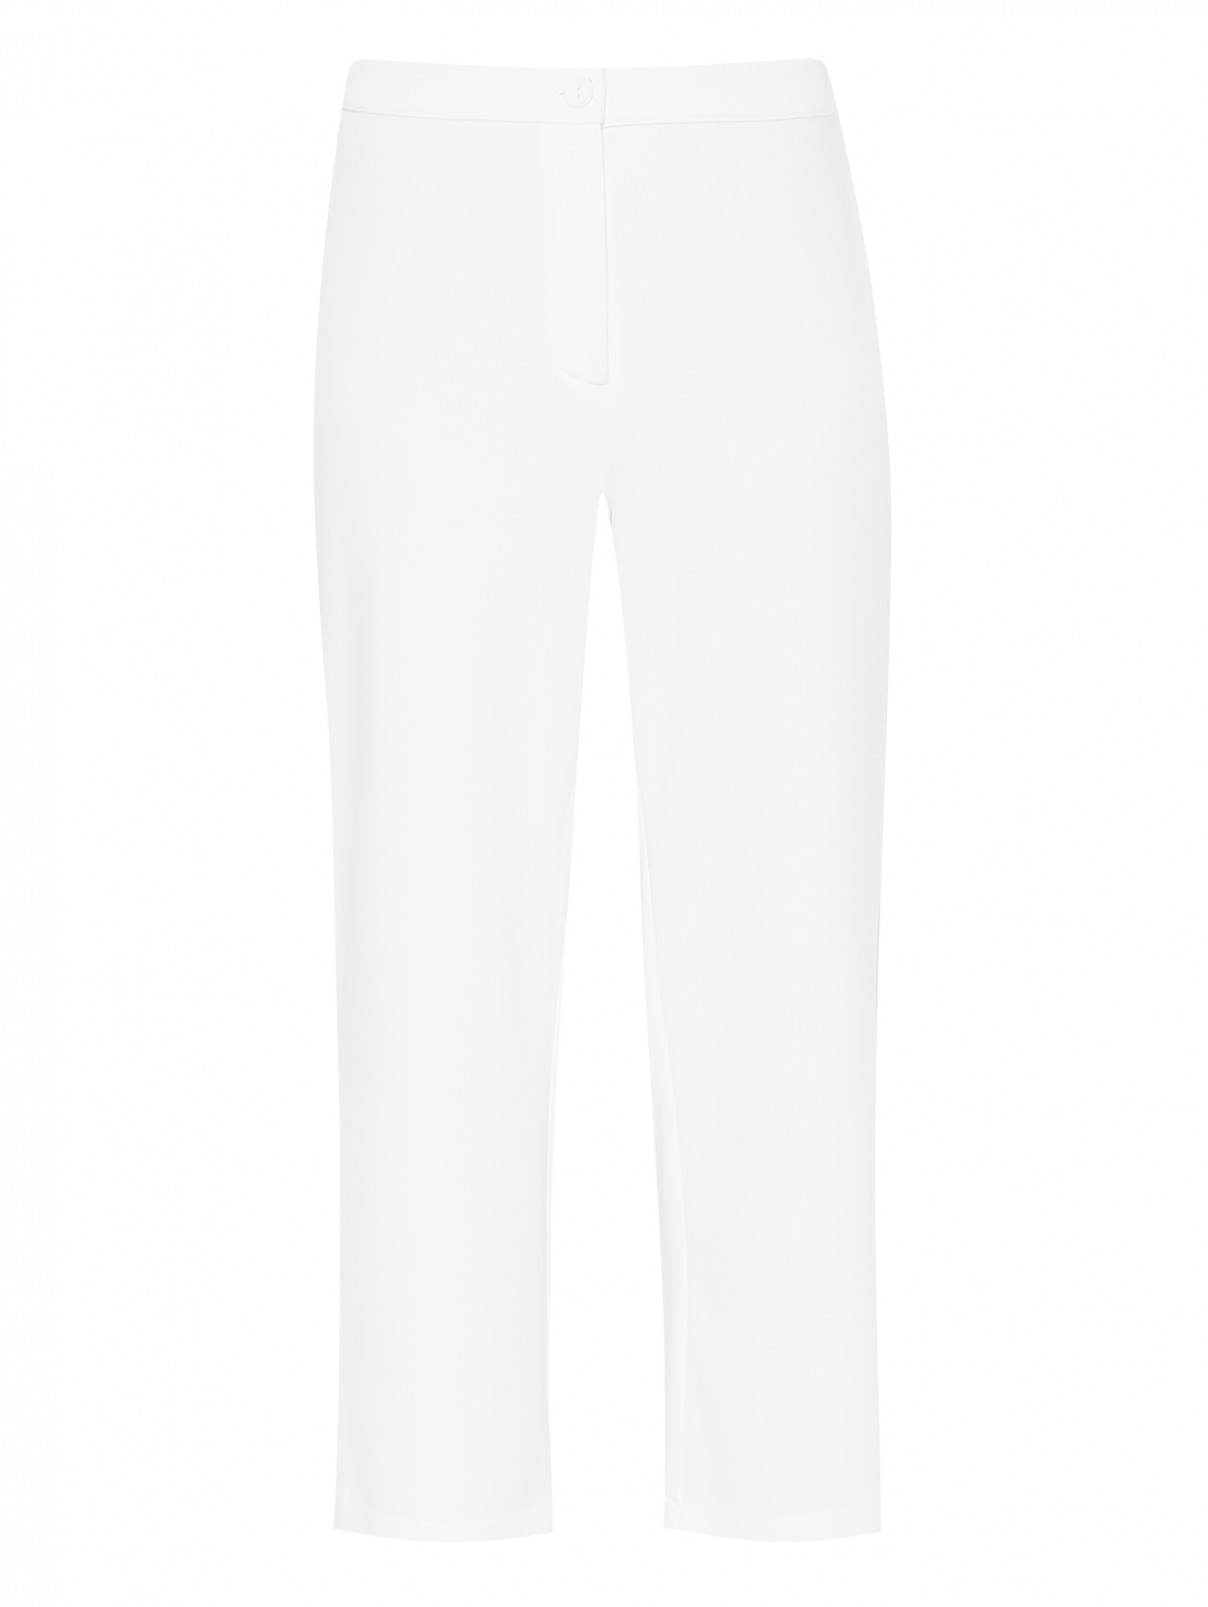 Укороченные брюки с разрезами Persona by Marina Rinaldi  –  Общий вид  – Цвет:  Белый